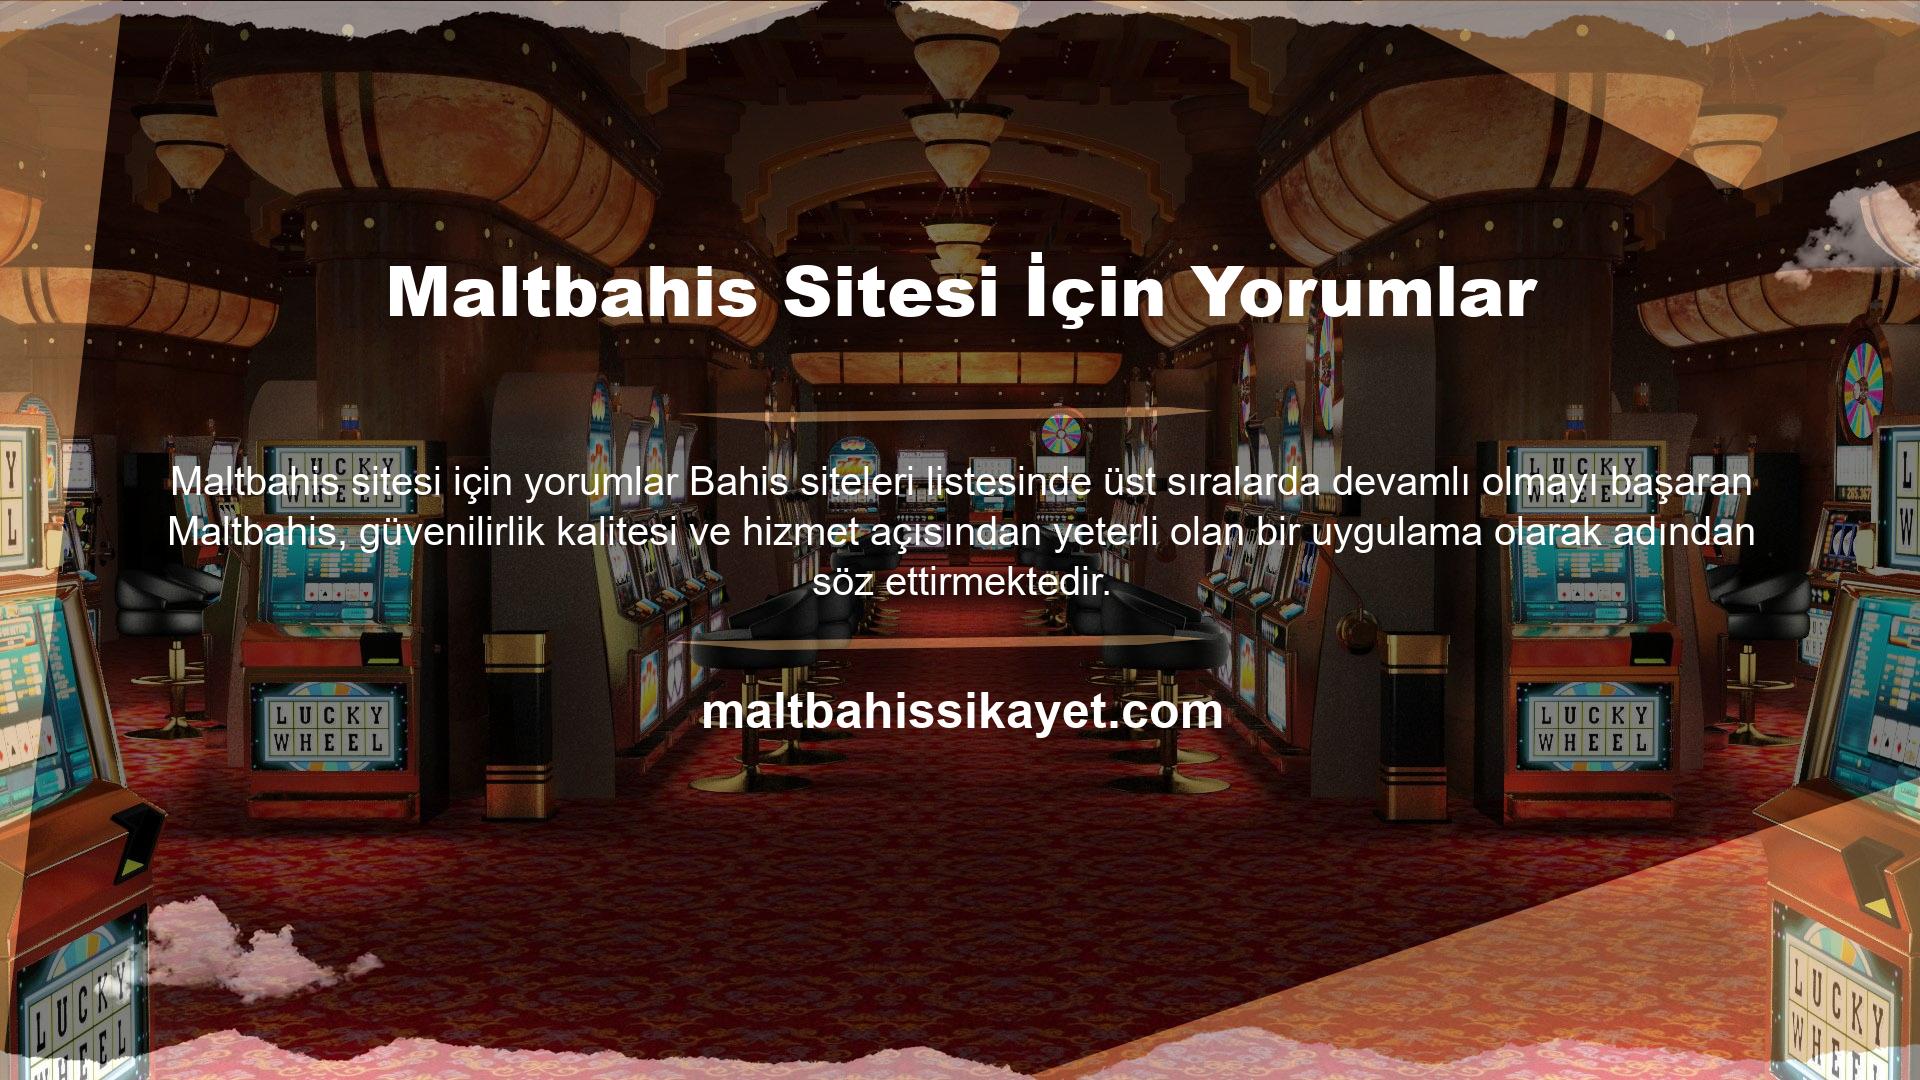 Maltbahis canlı bahis ve casino oyunları bet sitesinin, web site tasarımı da basit, anlaşılır ve kullanışlı bir alt yapıya sahiptir